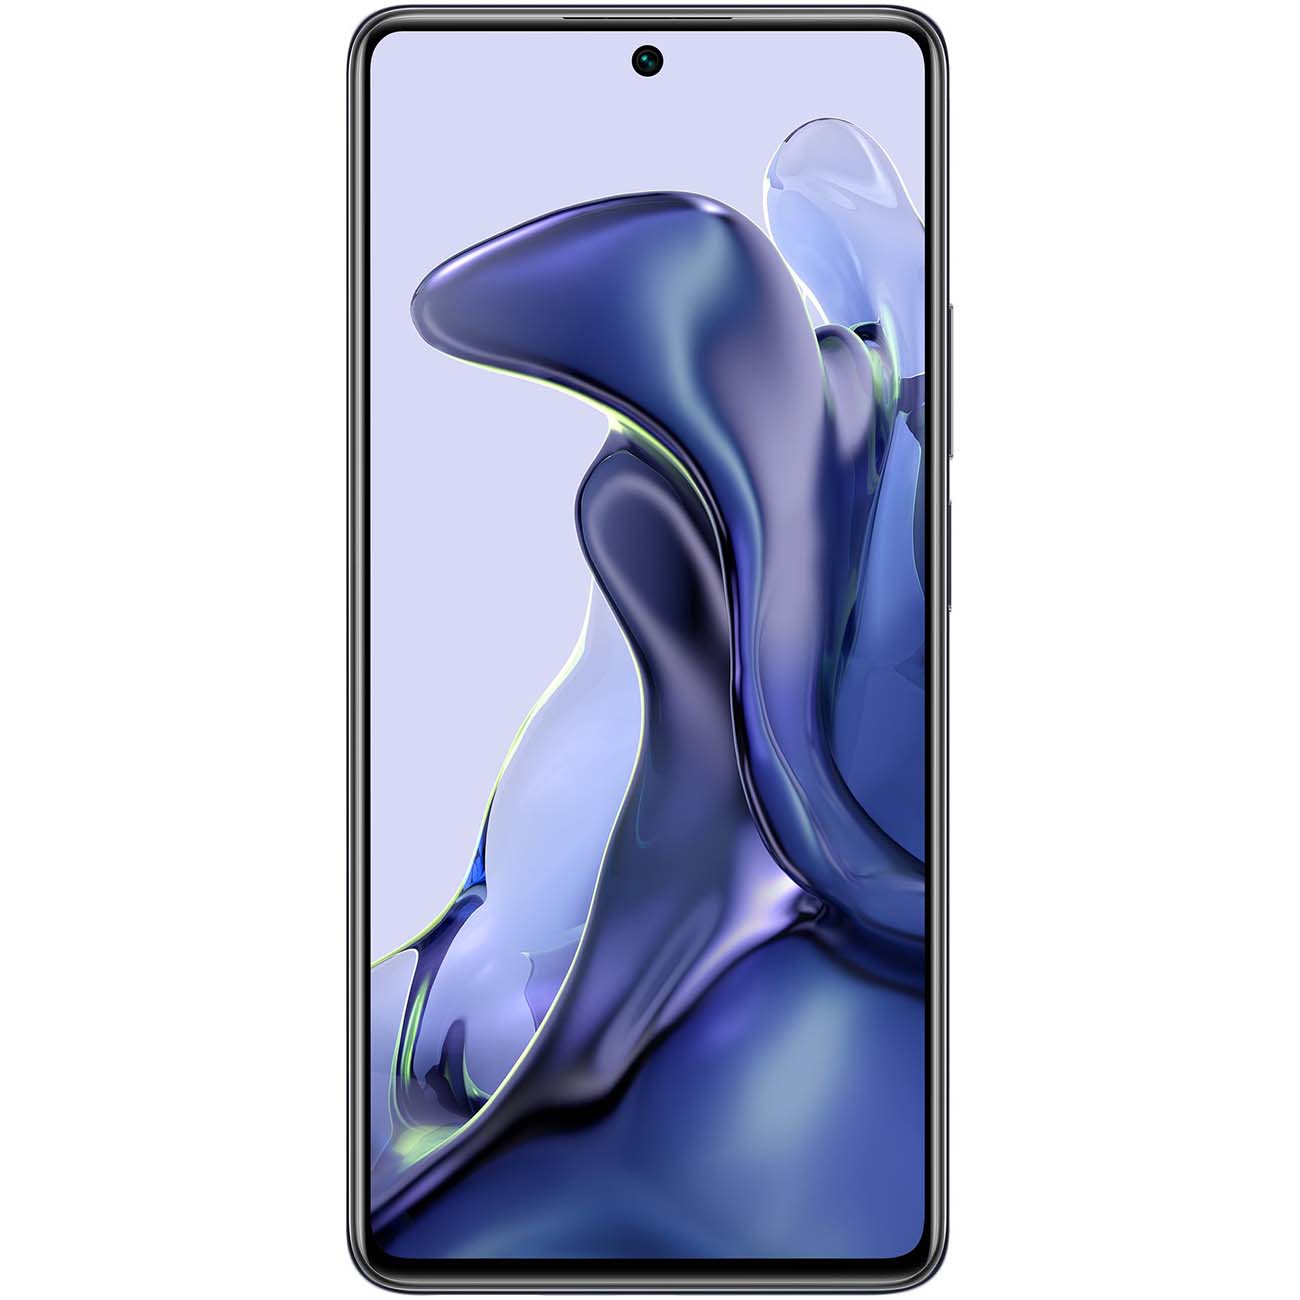 Купить смартфон xiaomi 11t 8gb+128gb gray Смартфоны в официальном магазине Apple, Samsung, Xiaomi. iPixel.ru Купить, заказ, кредит, рассрочка, отзывы,  характеристики, цена,  фотографии, в подарок.